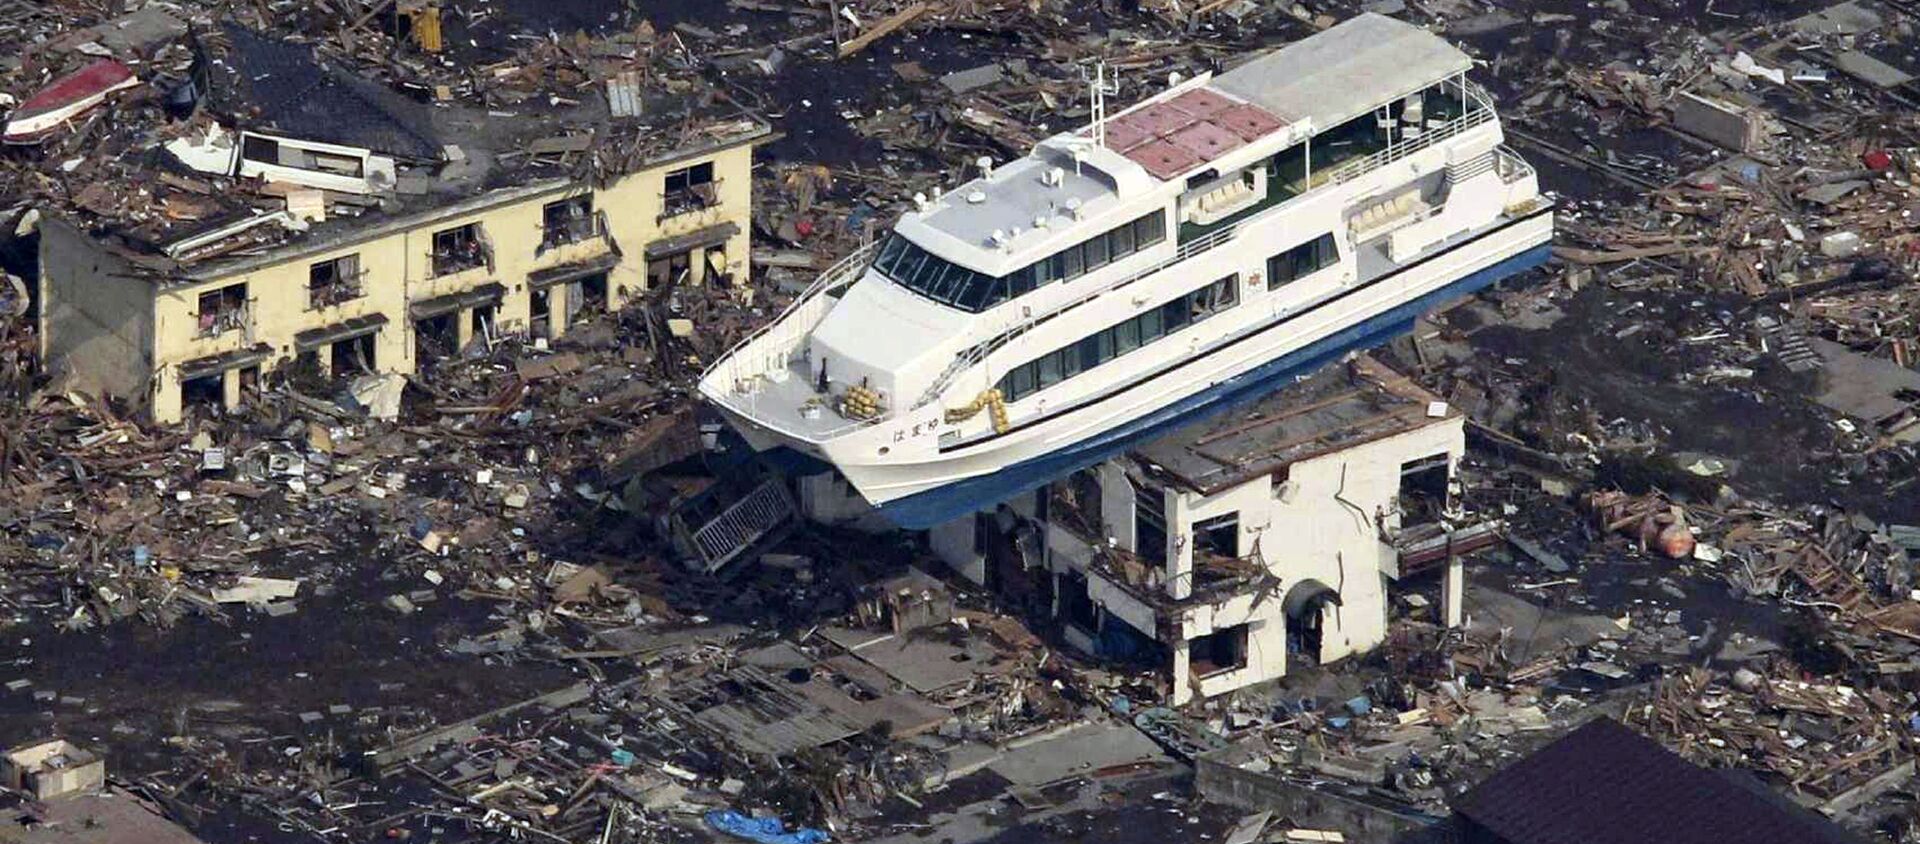 Du thuyền trên nóc tòa nhà ở thành phố Otsuchi sau trận động đất và sóng thần ngày 11 tháng 3 năm 2011 tại Nhật Bản - Sputnik Việt Nam, 1920, 11.03.2019